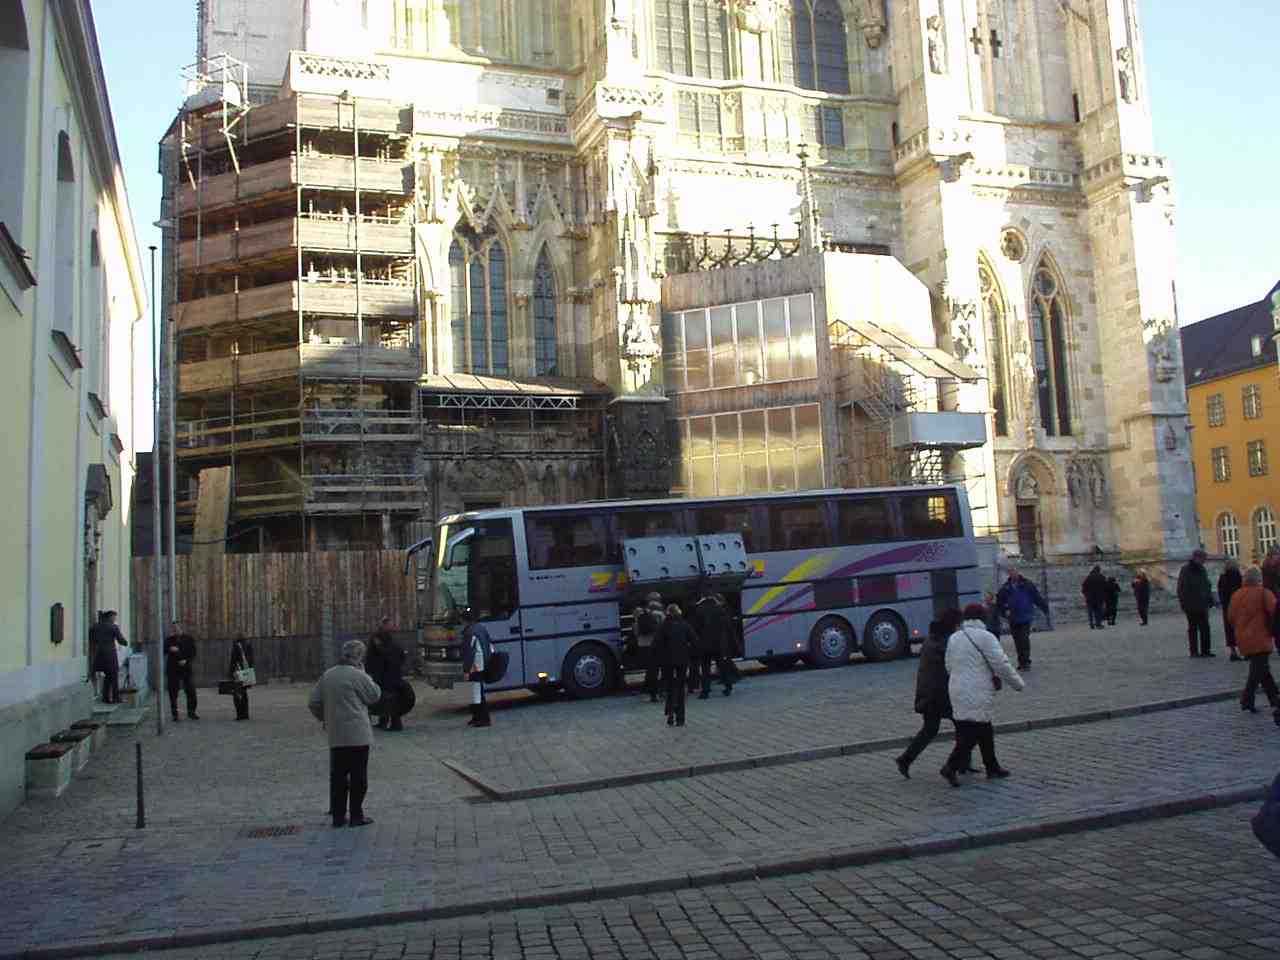 Dom, Stiftskirche mit Bus